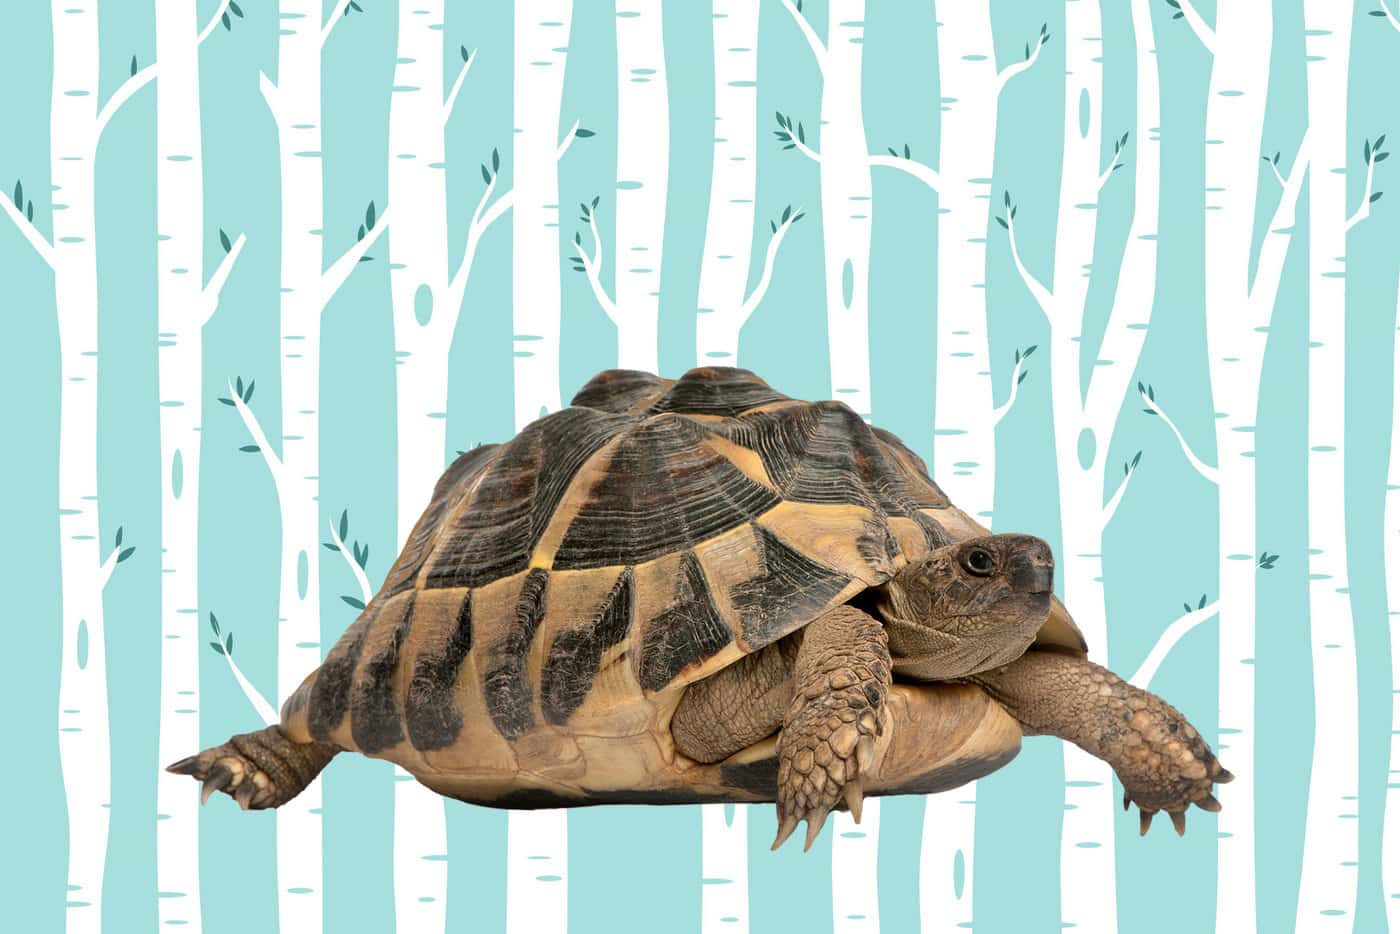 Turtle or tortoise